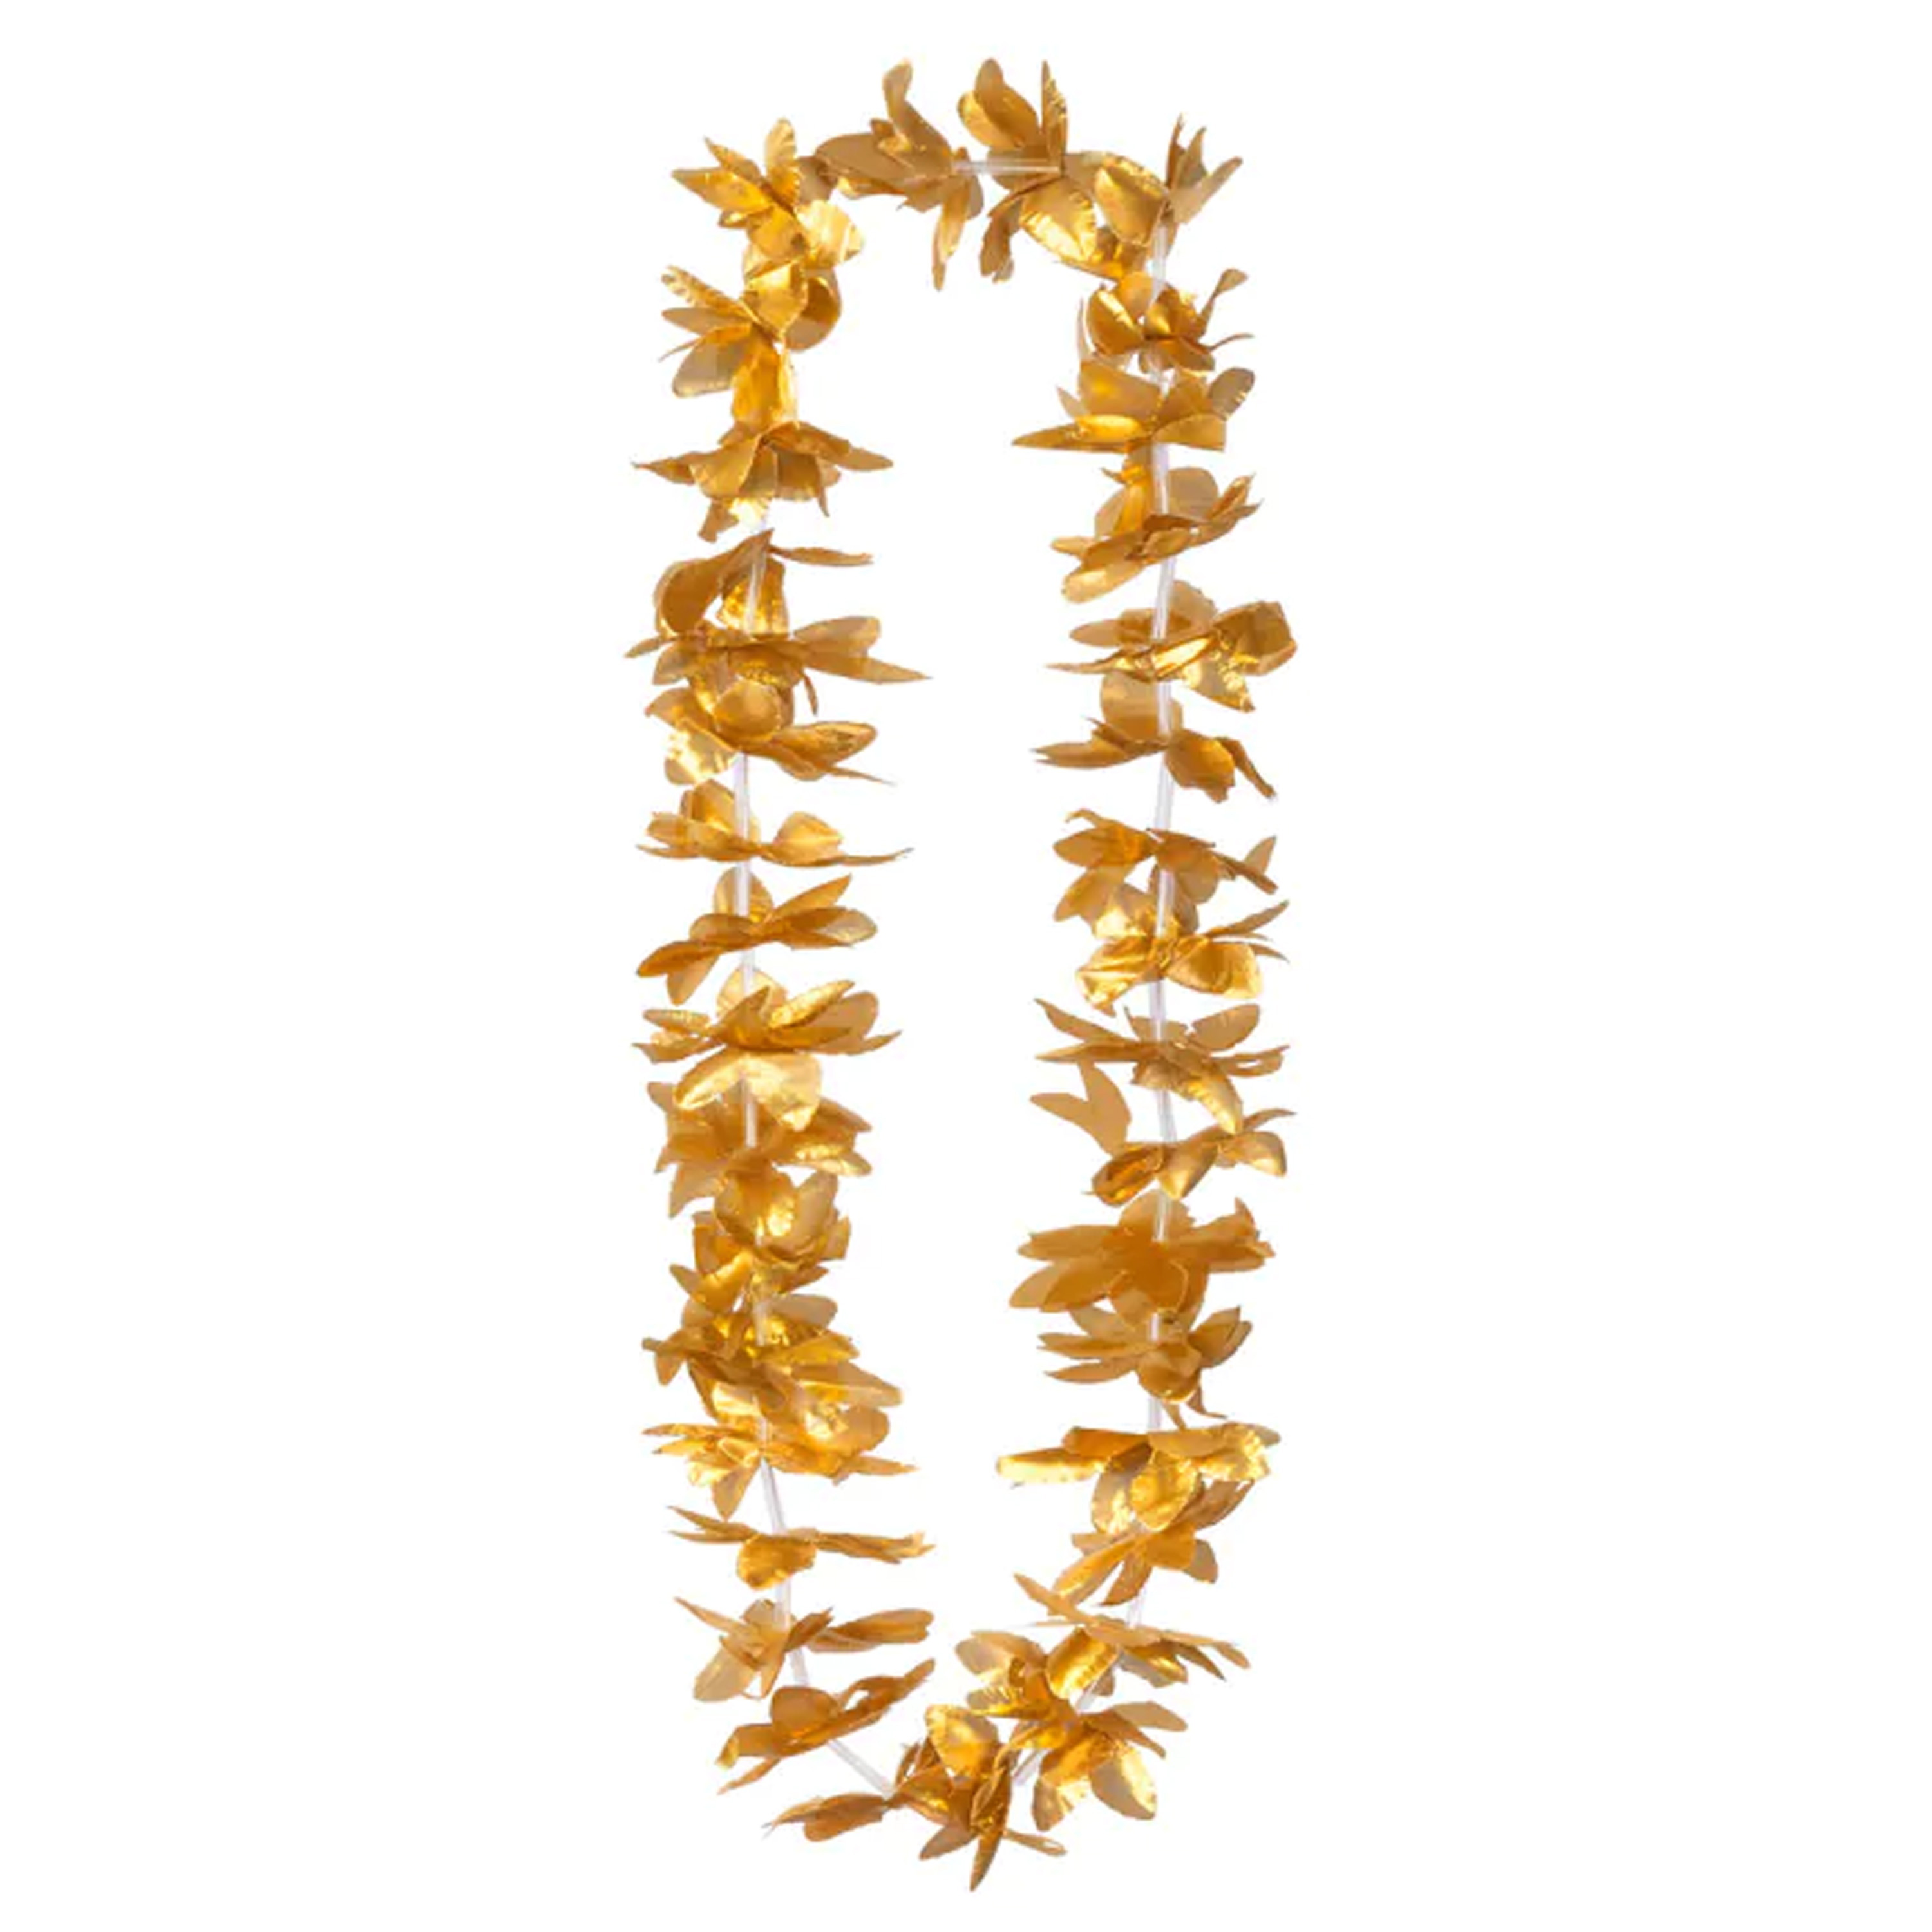 Toppers - Hawaii krans/slinger - Tropische kleuren goud - Bloemen hals slingers